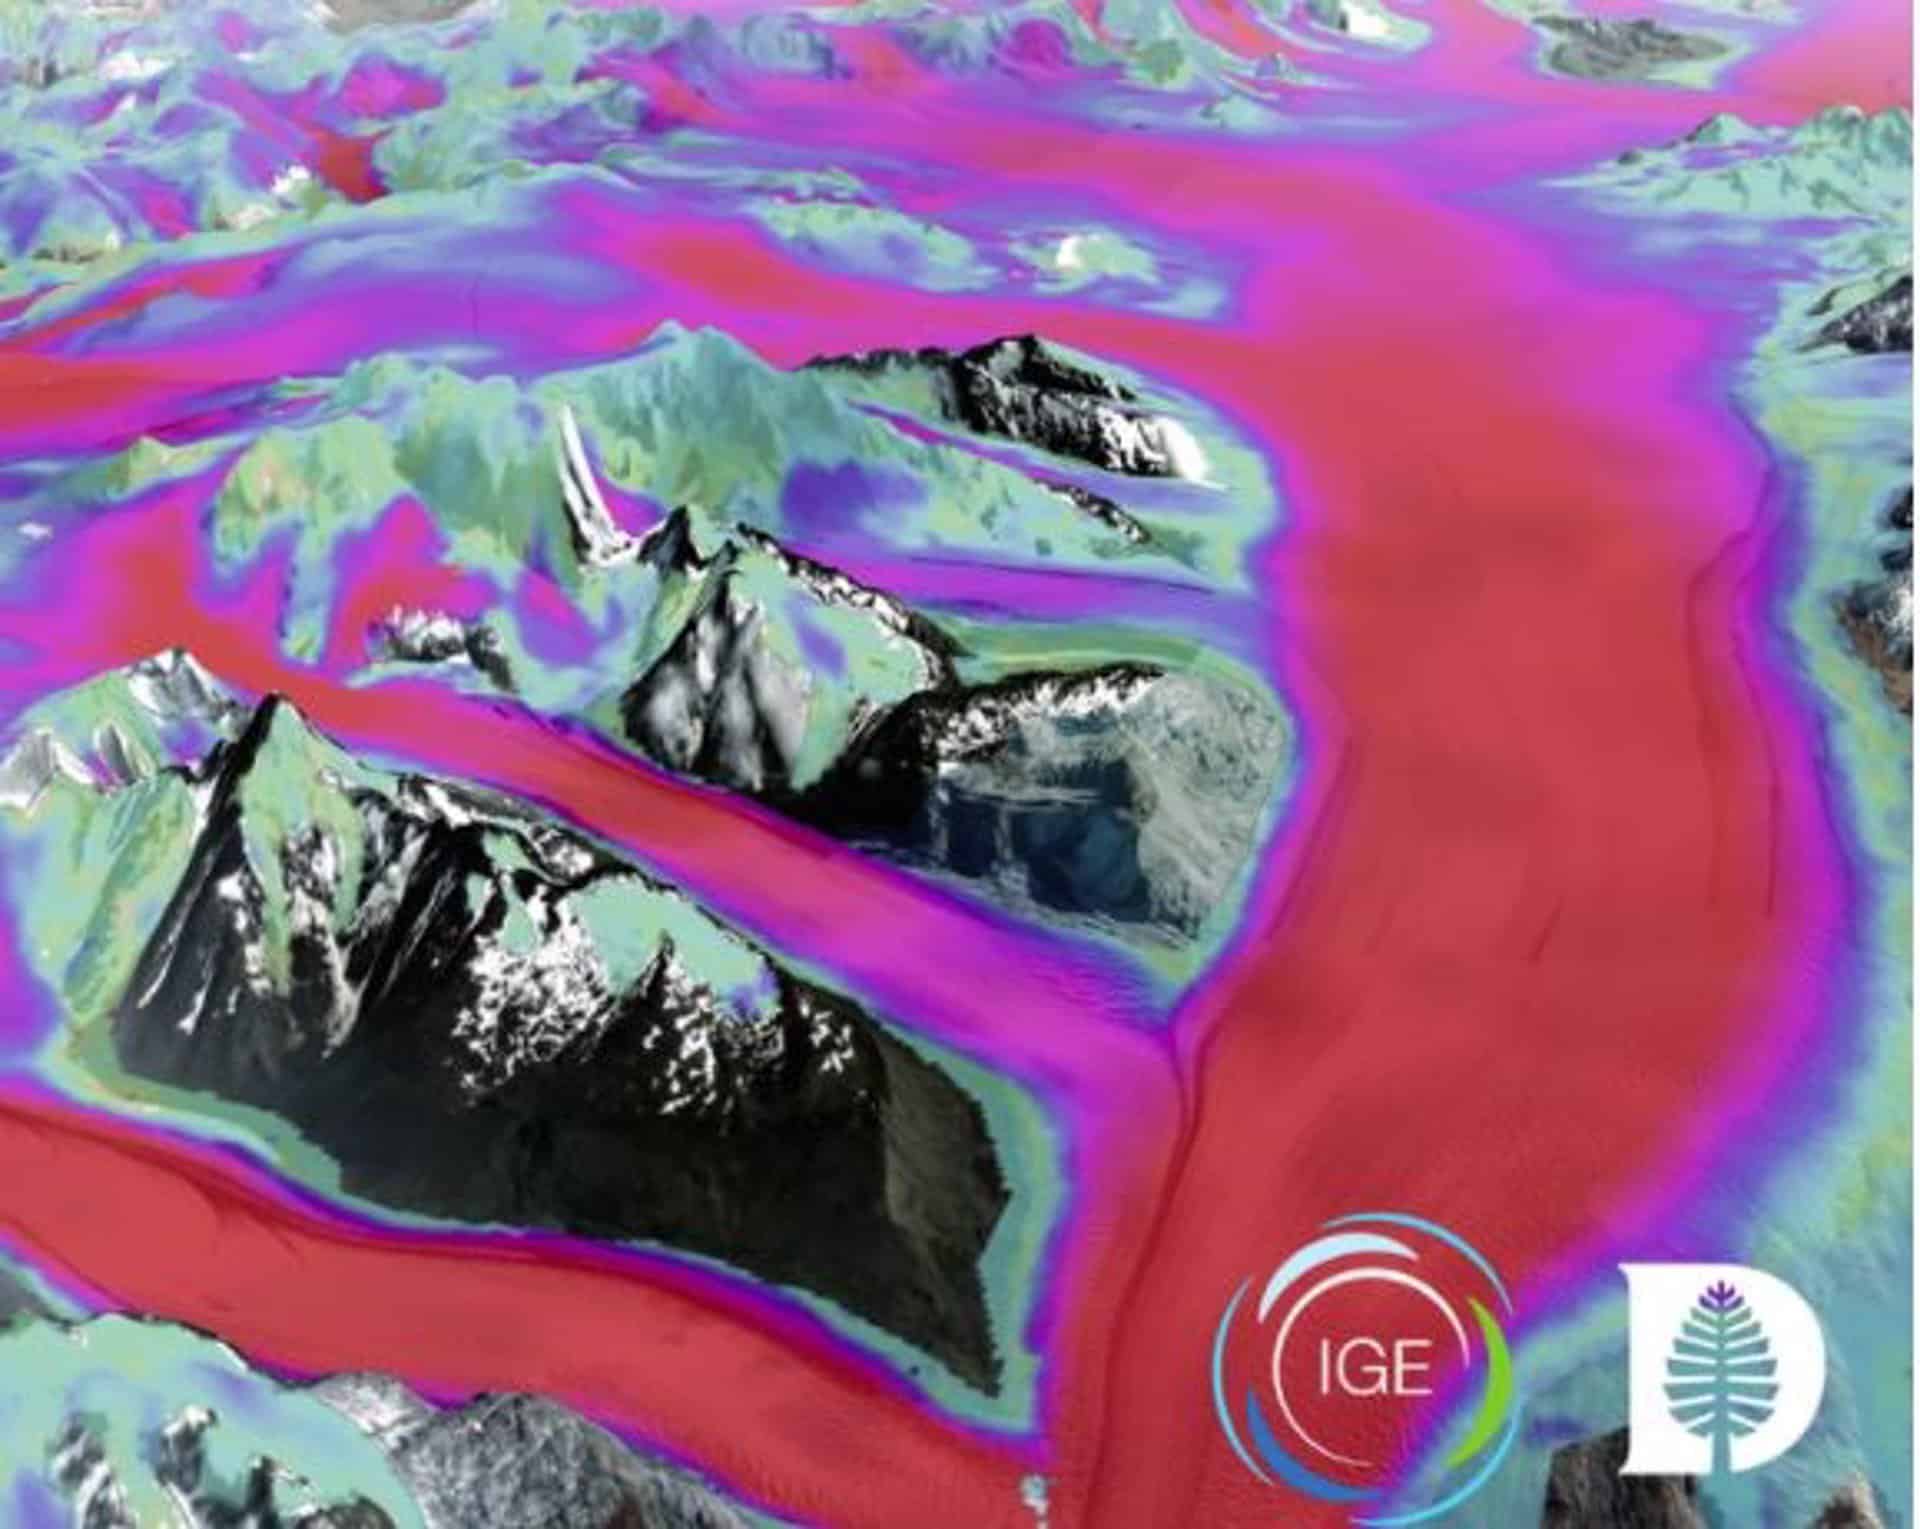 Incluido en la investigación estaba el primer mapeo de todos los campos de hielo de la Patagonia. Se descubrió que el enorme glaciar Upsala, que se muestra aquí, se movía a una velocidad de aproximadamente 1 milla por año.